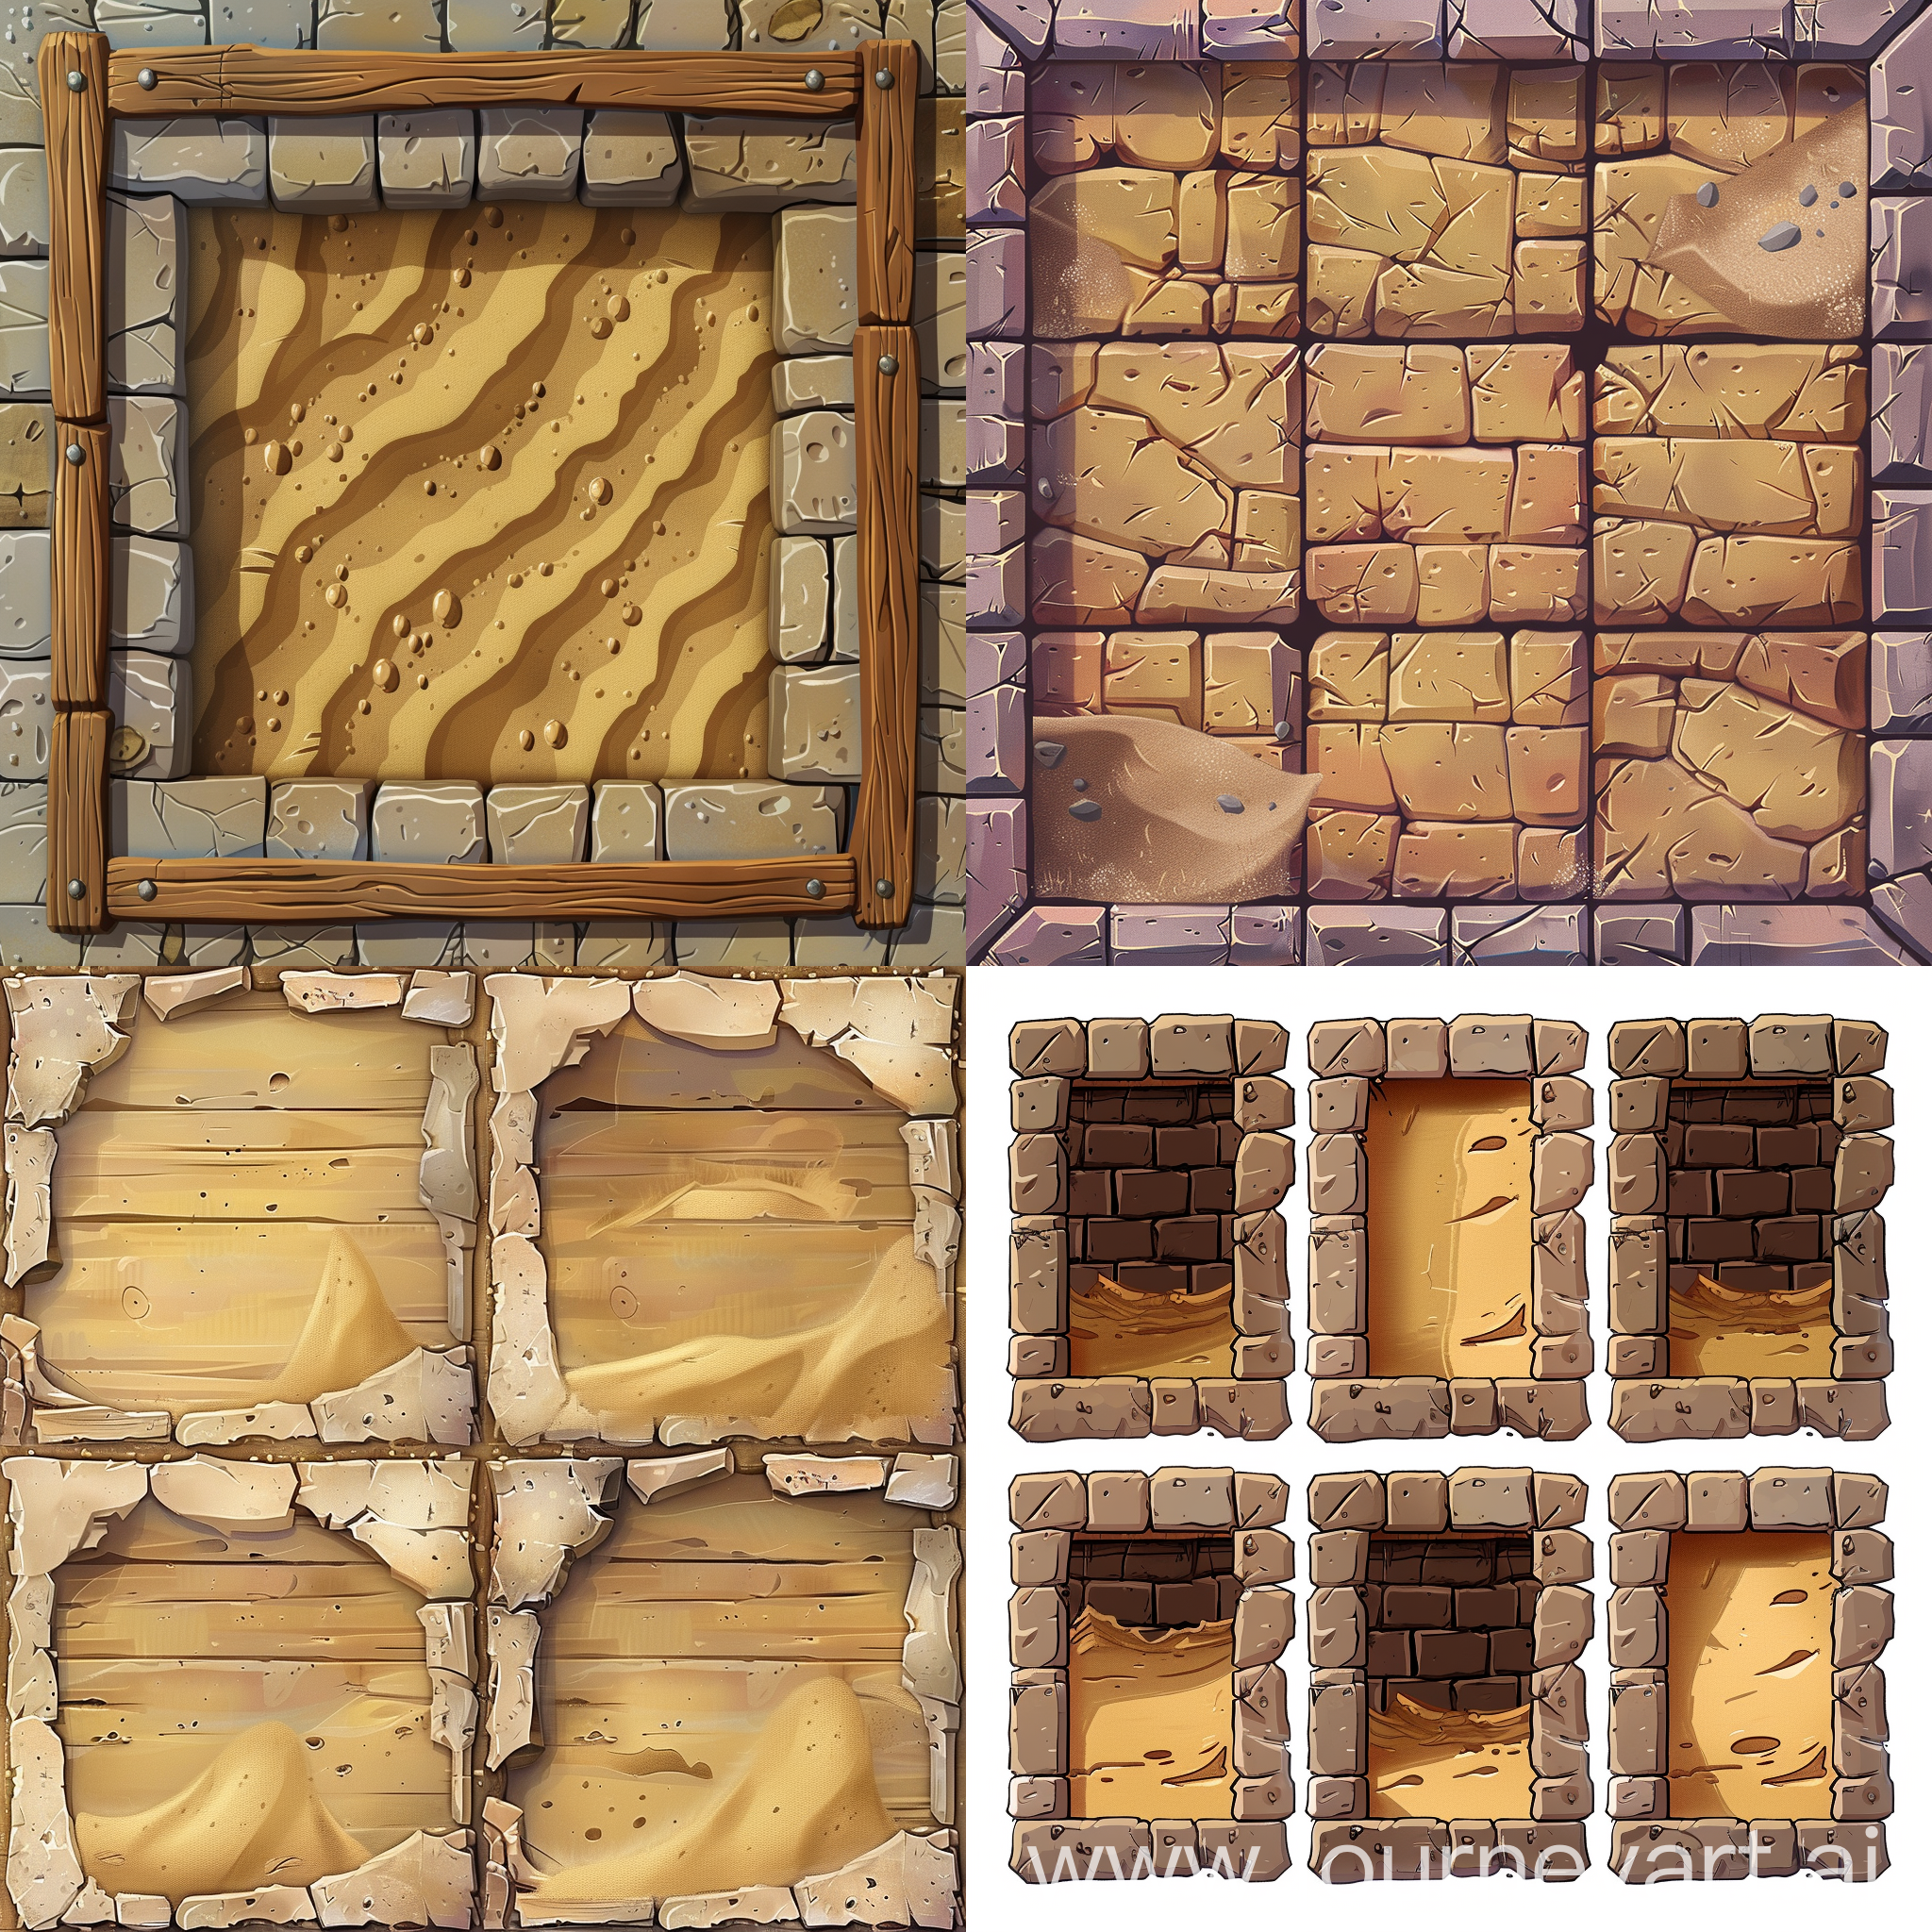 Platformer Game Tileset Quantum Quest wall (Top Left Down Right) with sand inside tilemap set 1080 x 1080 cartoon 2D